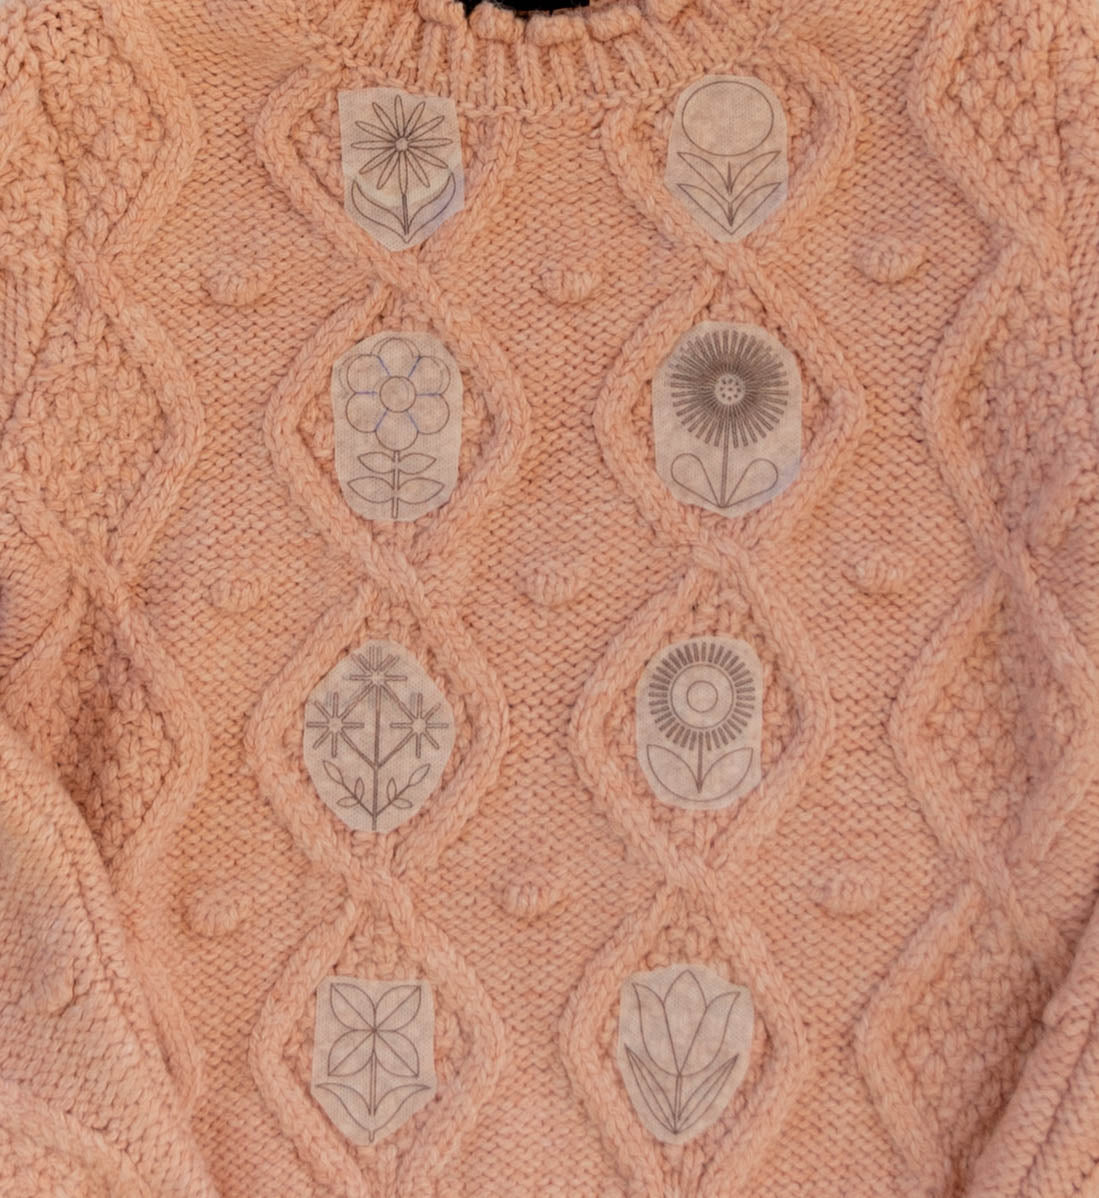 Scandi Flowers Stick & Stitch Embroidery Pattern – Pam Powers Knits